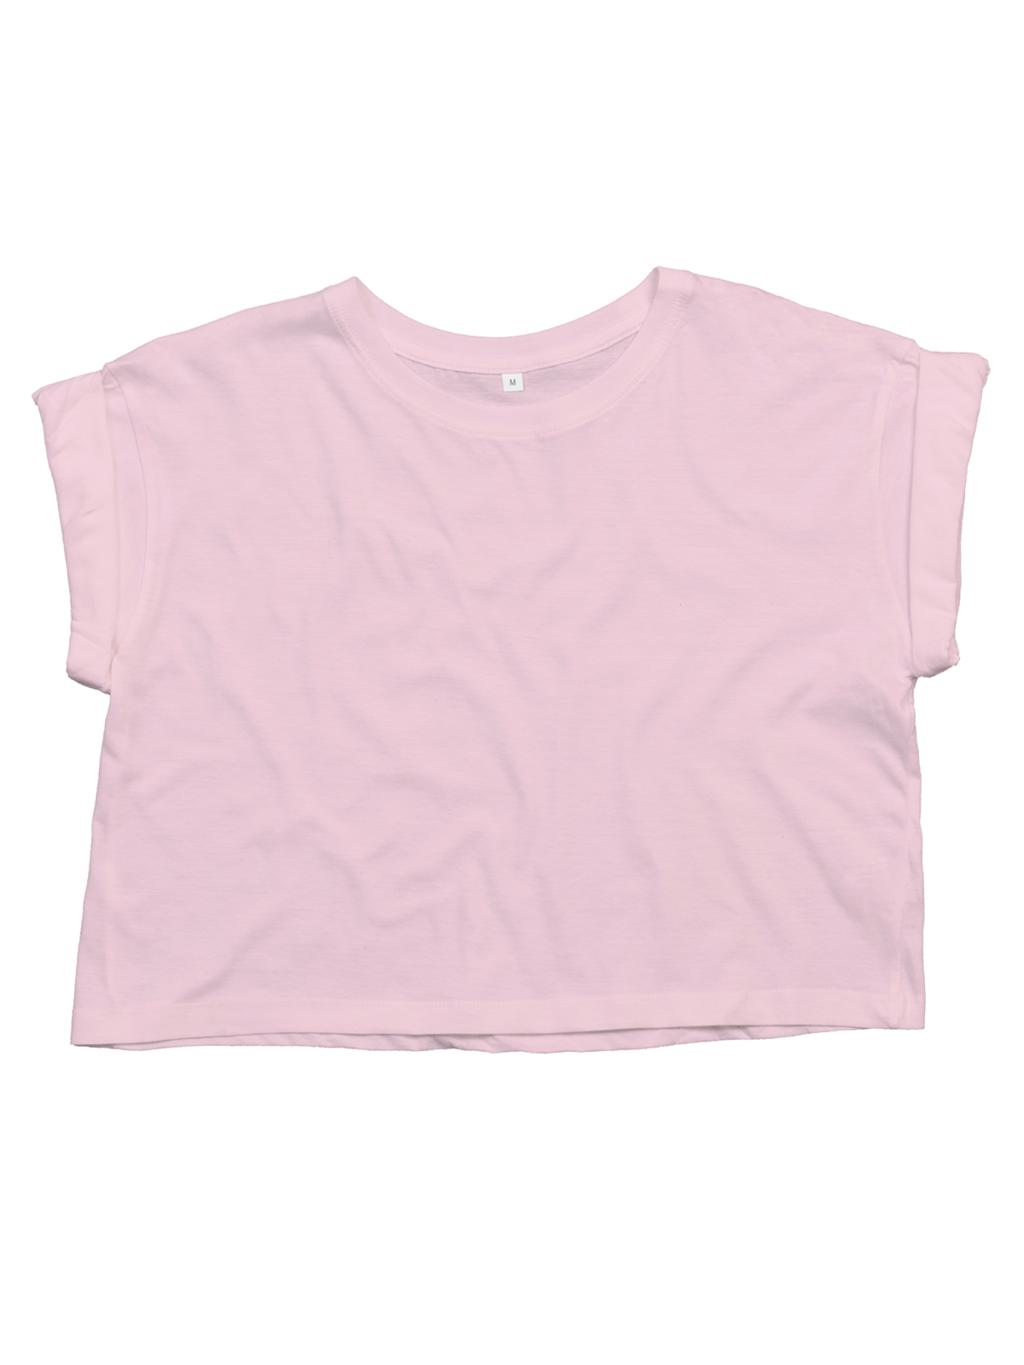 Dámske tričko Crop z organickej bavlny - soft pink